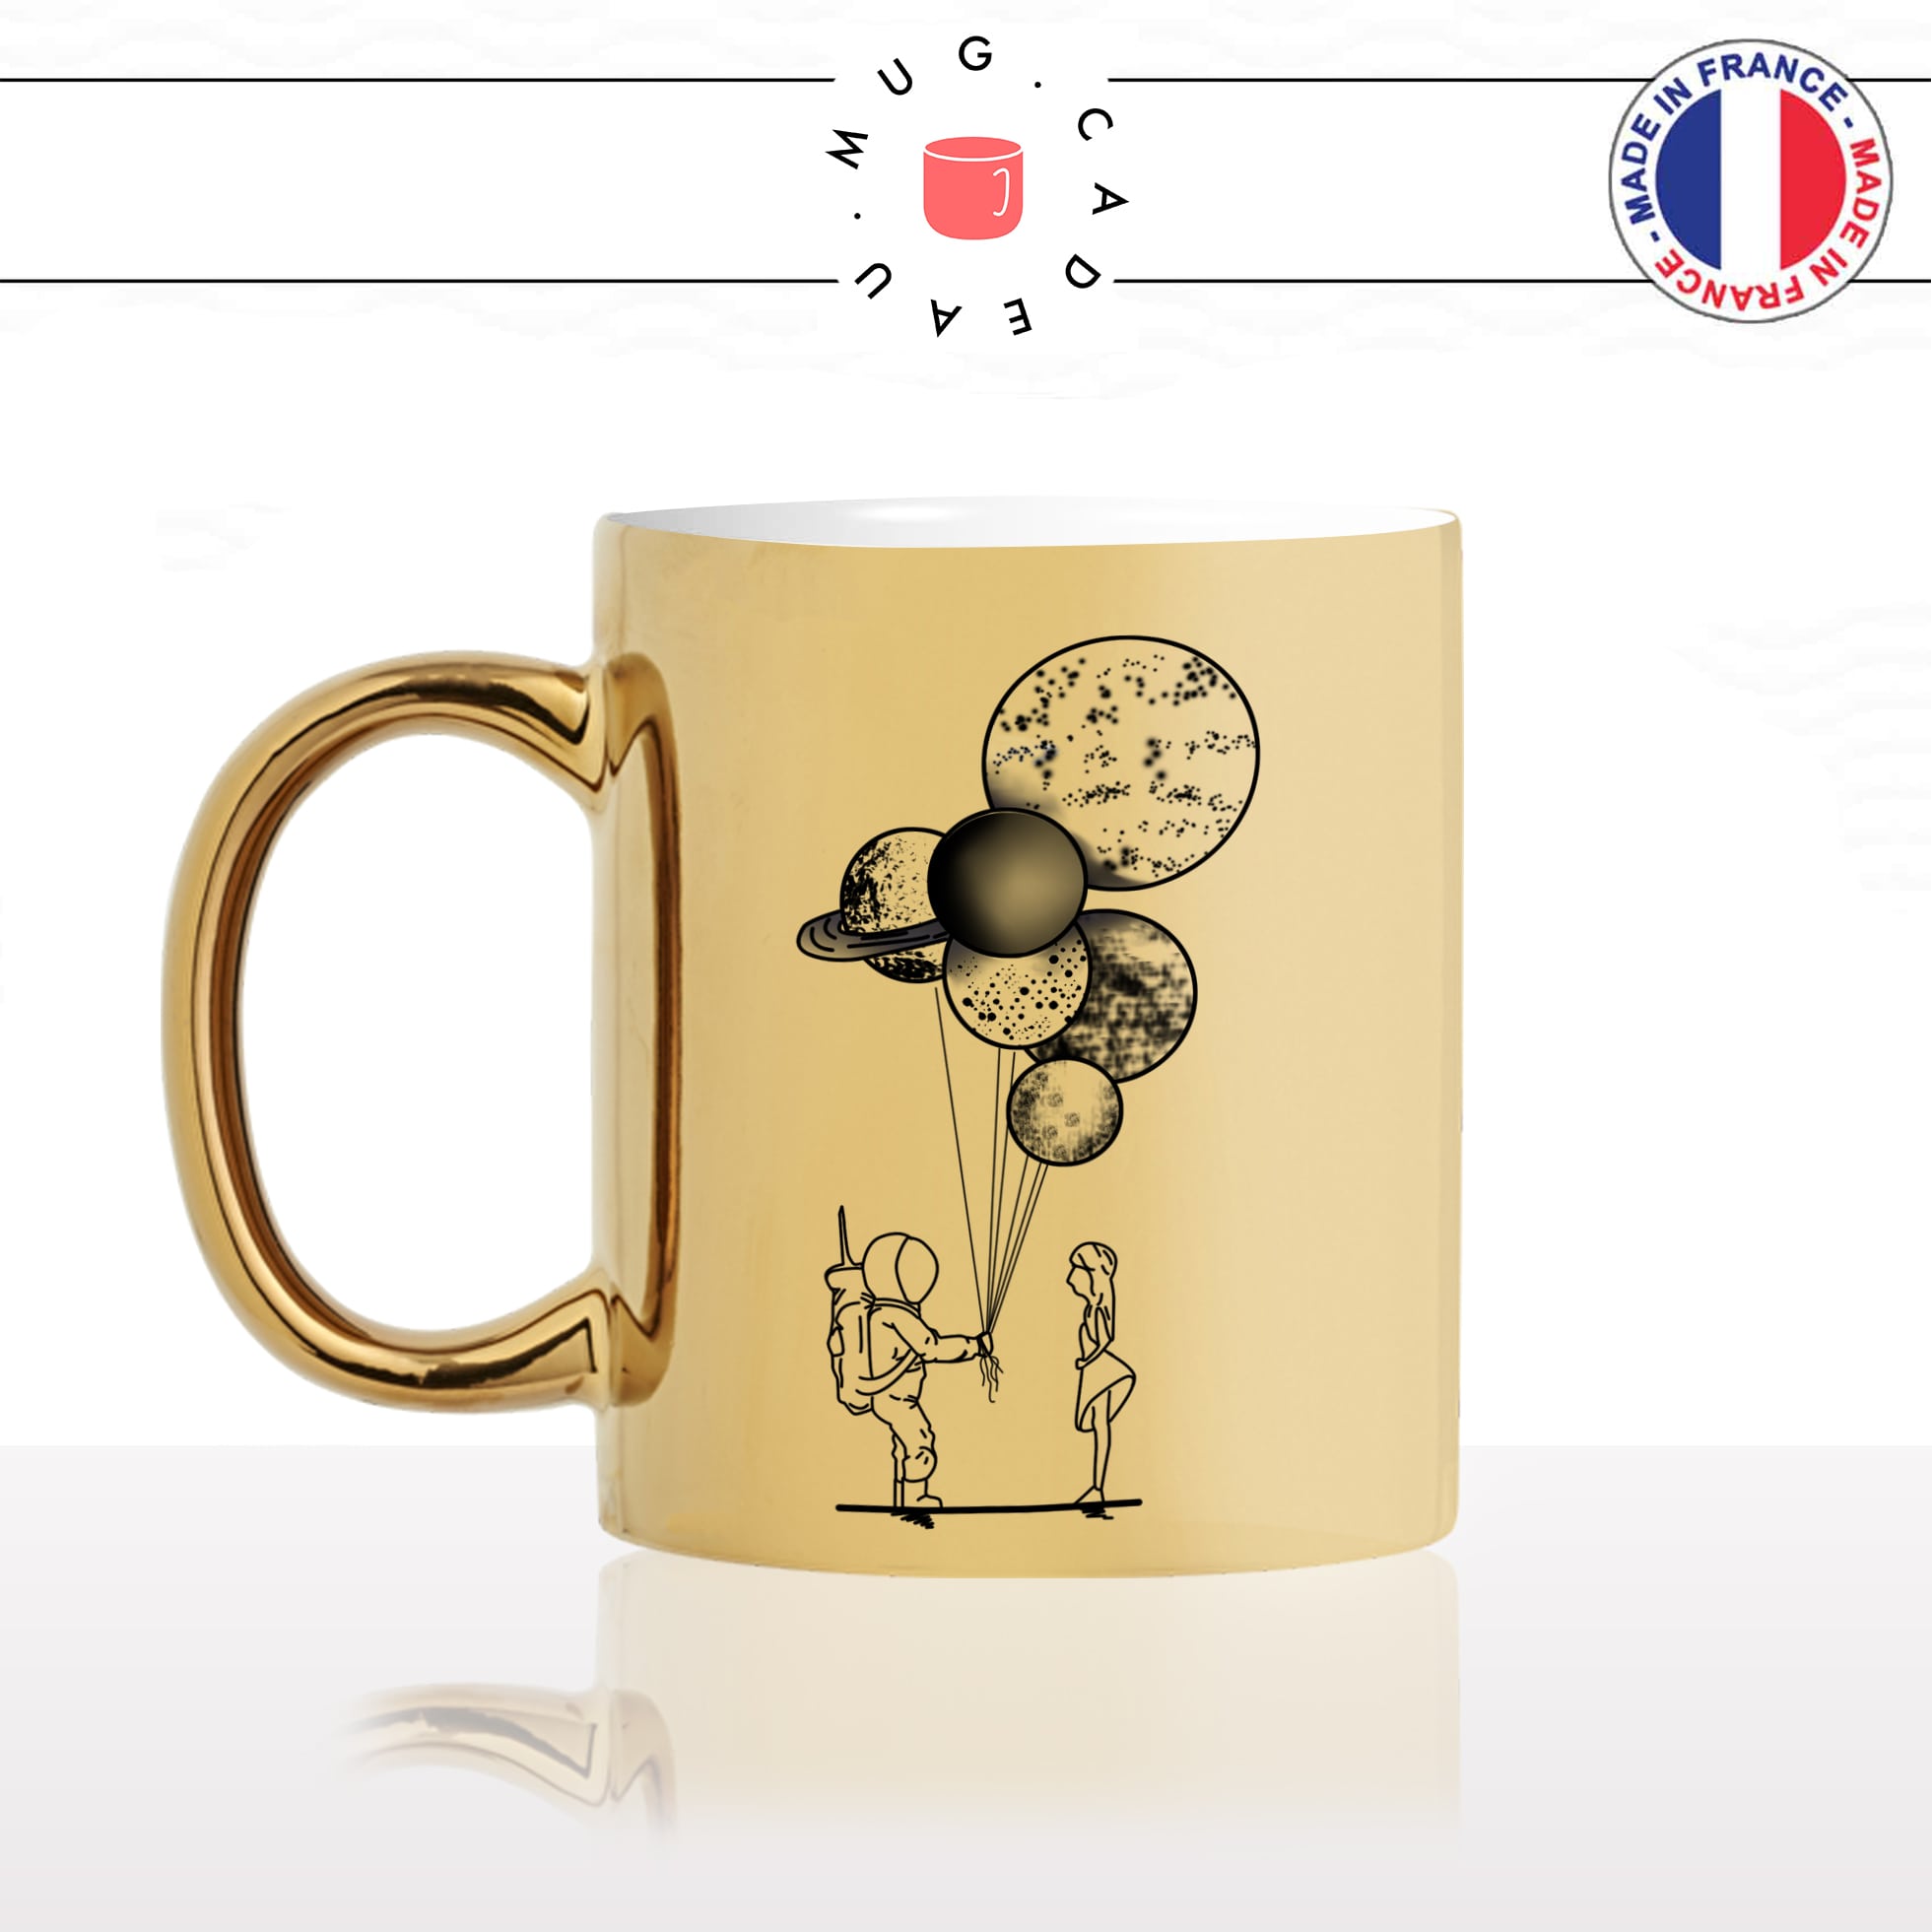 mug-tasse-or-doré-gold-espace-planete-bouquet-couple-astronaute-amour-mignon-cool-idée-cadeau-drole-original-fun-café-thé-personnalisé-min